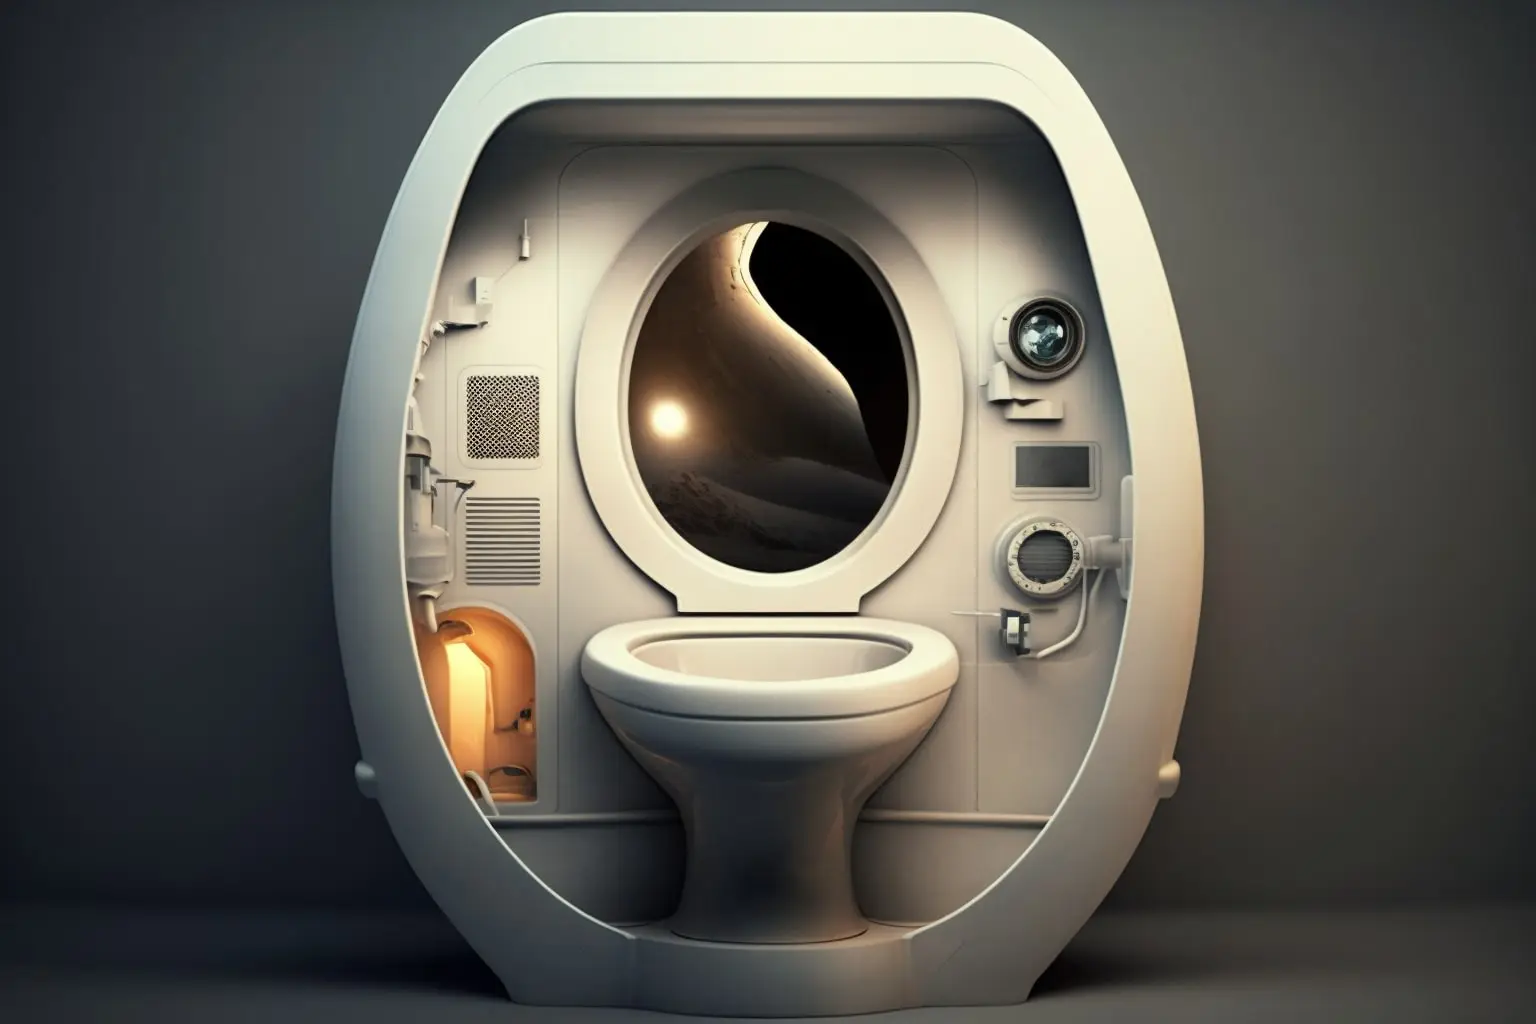 Fantasy Spaceship Toilet